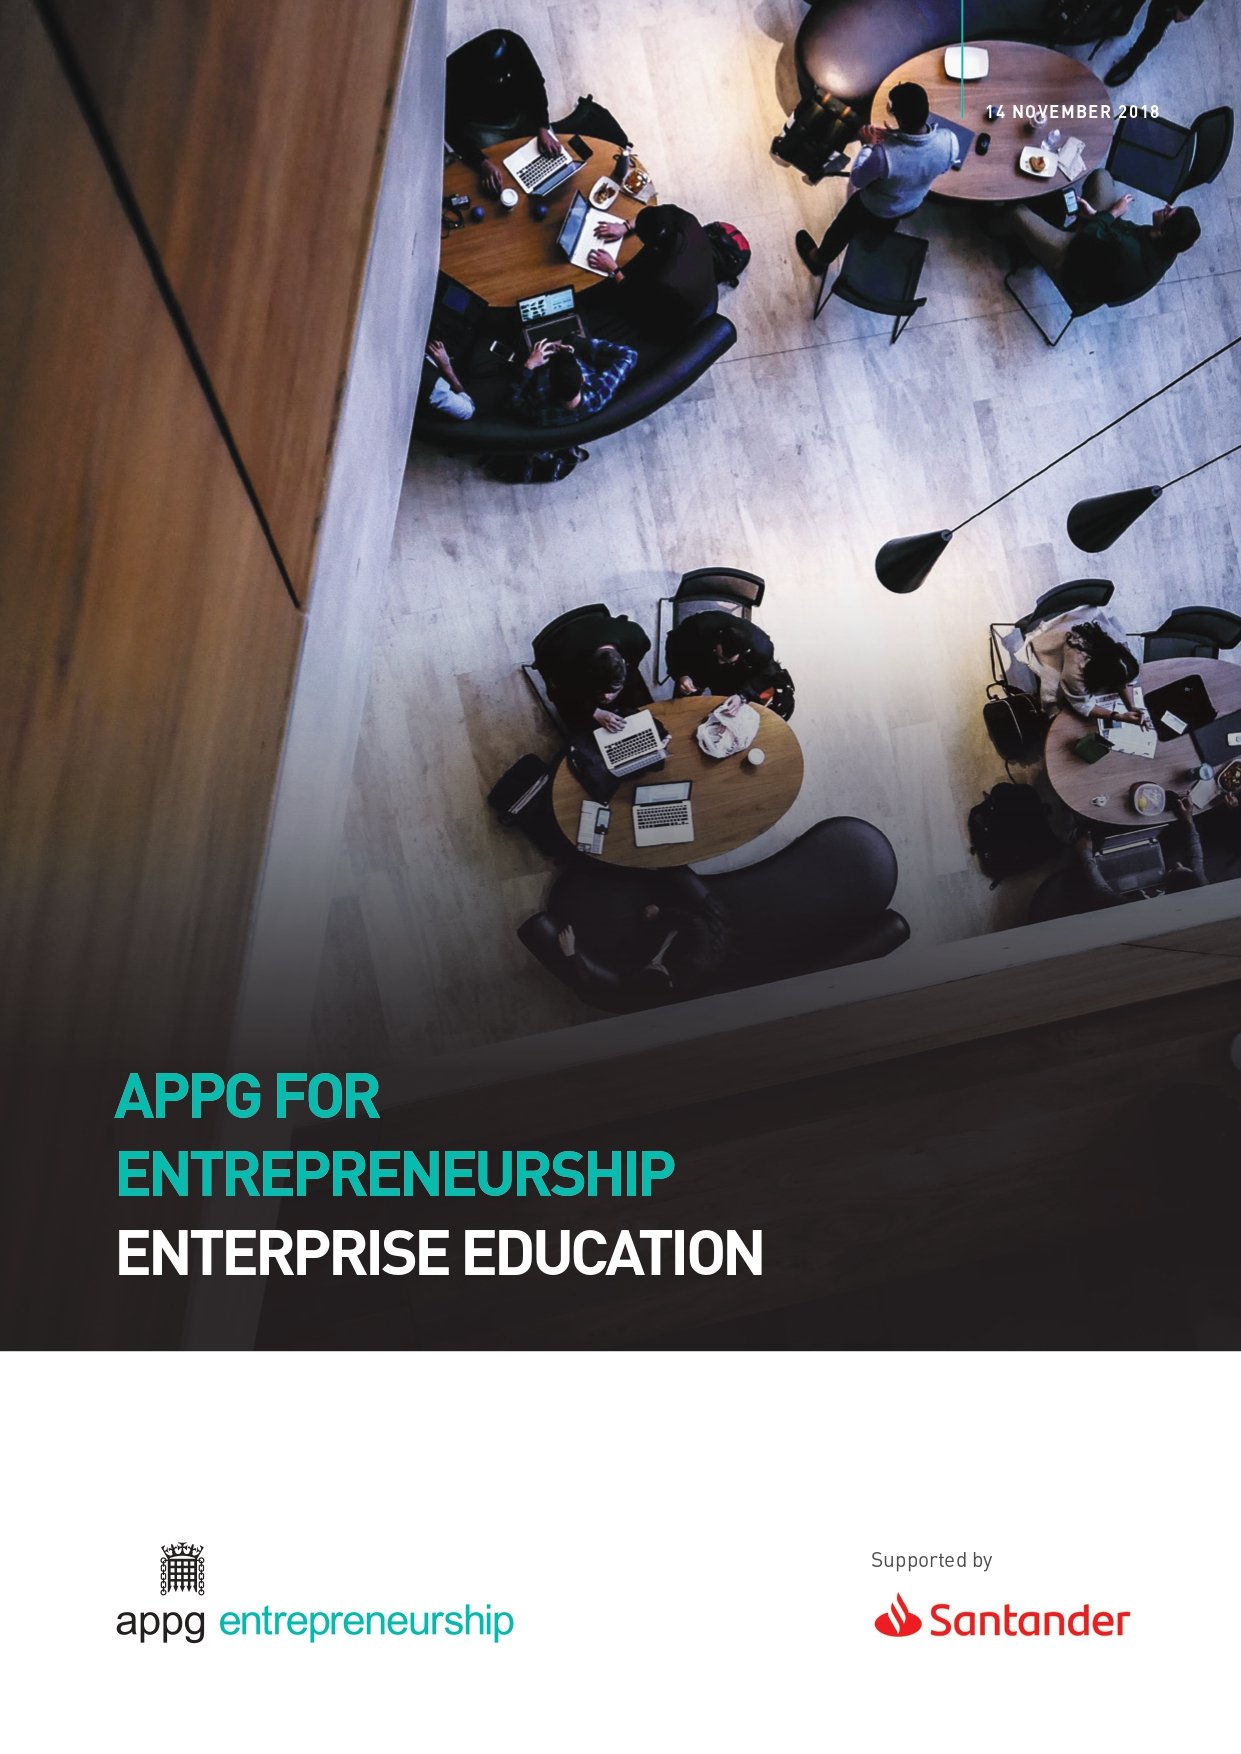 Enterprise Education